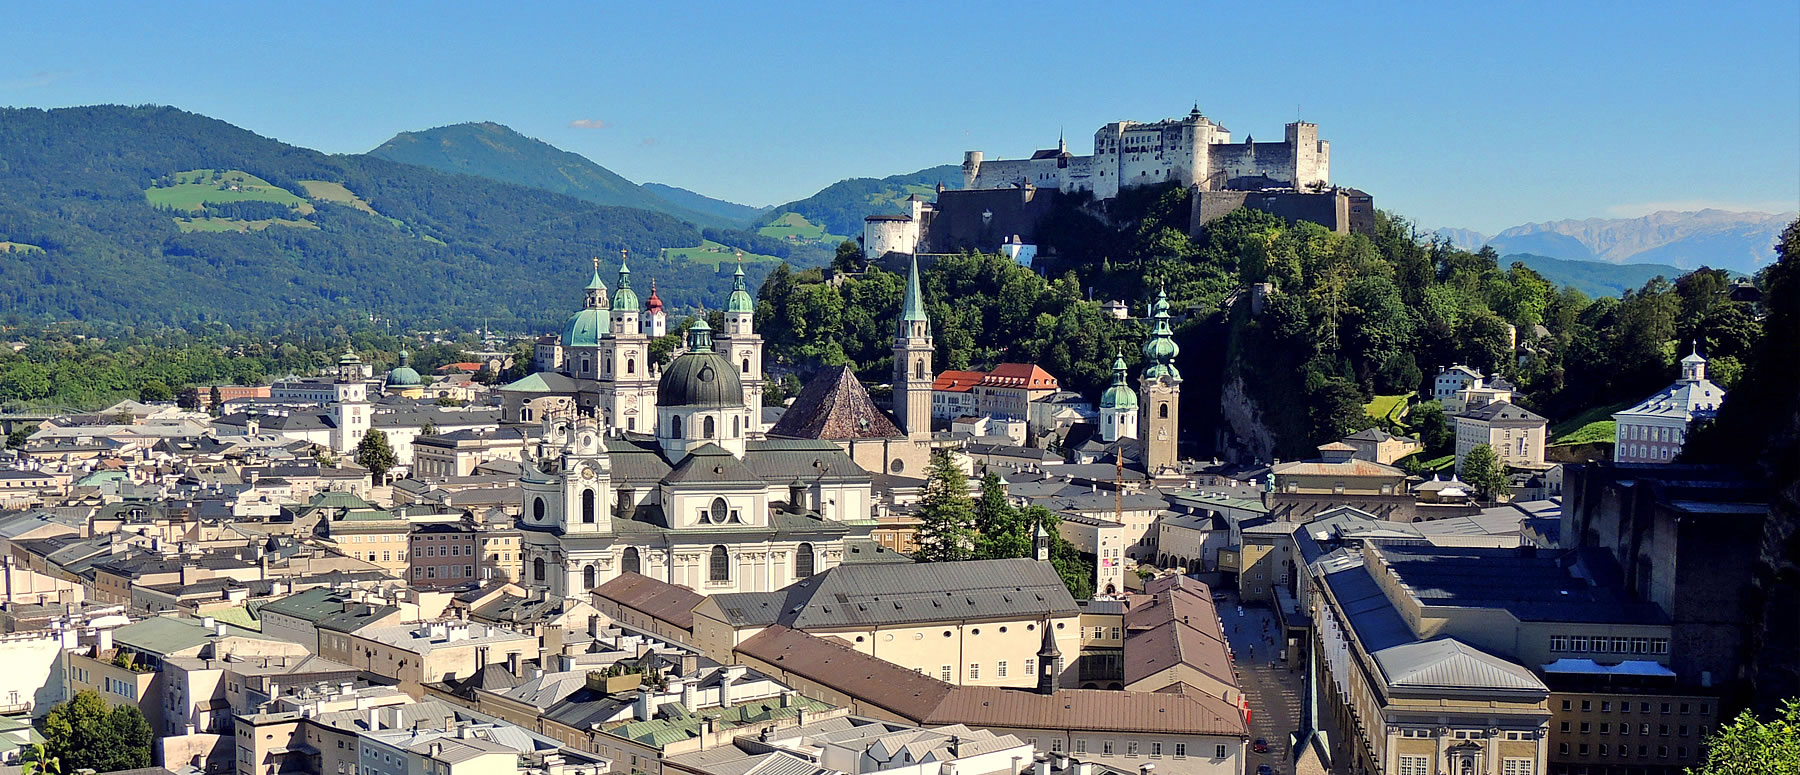 Salzburg mit Salzach und Burg an einem schönen Sommertag